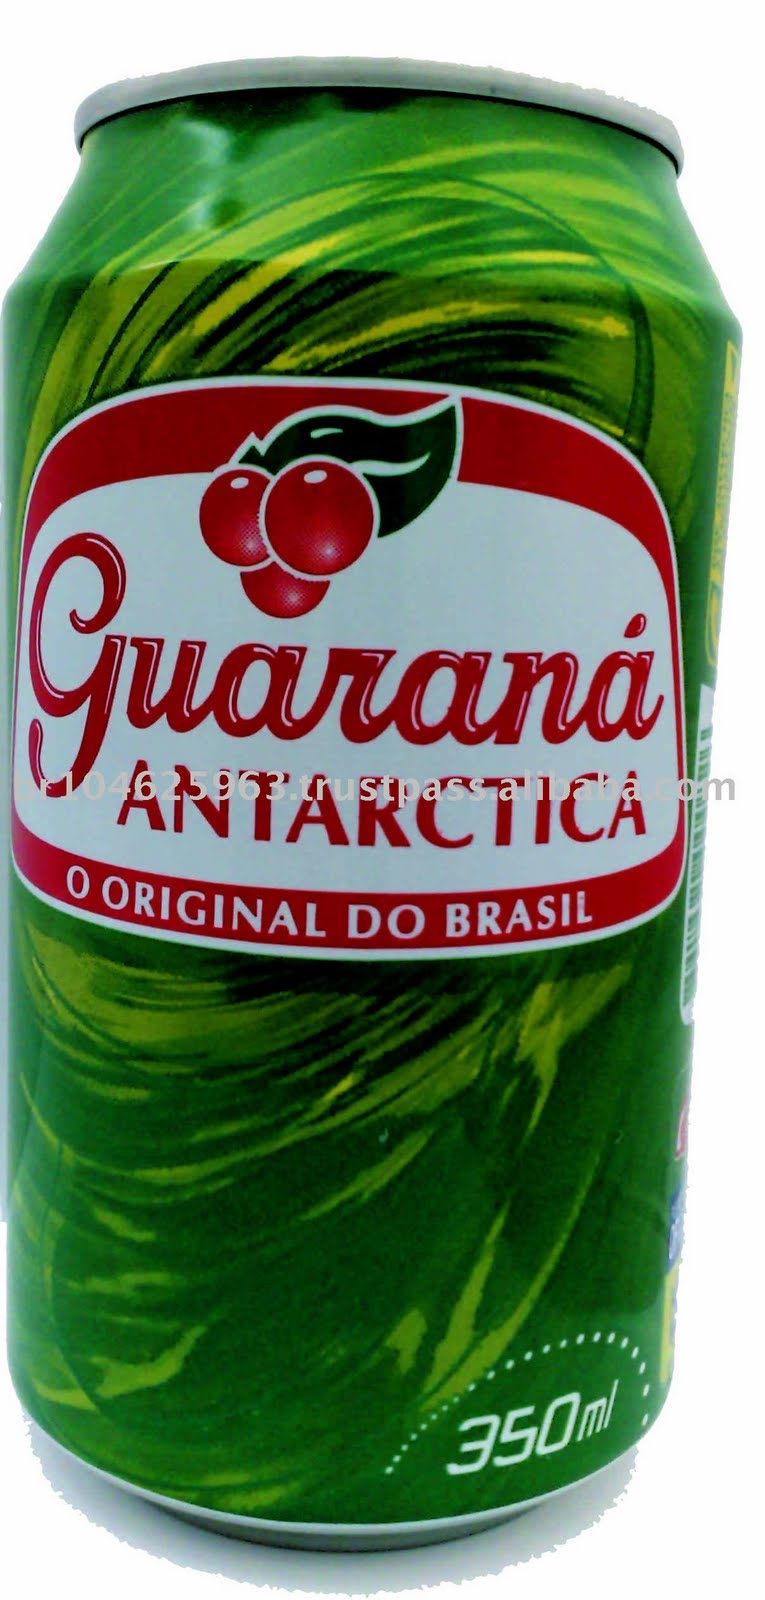 Guaran%C3%A1+Antarctica+lan%C3%A7a+promo%C3%A7%C3%A3o.jpg